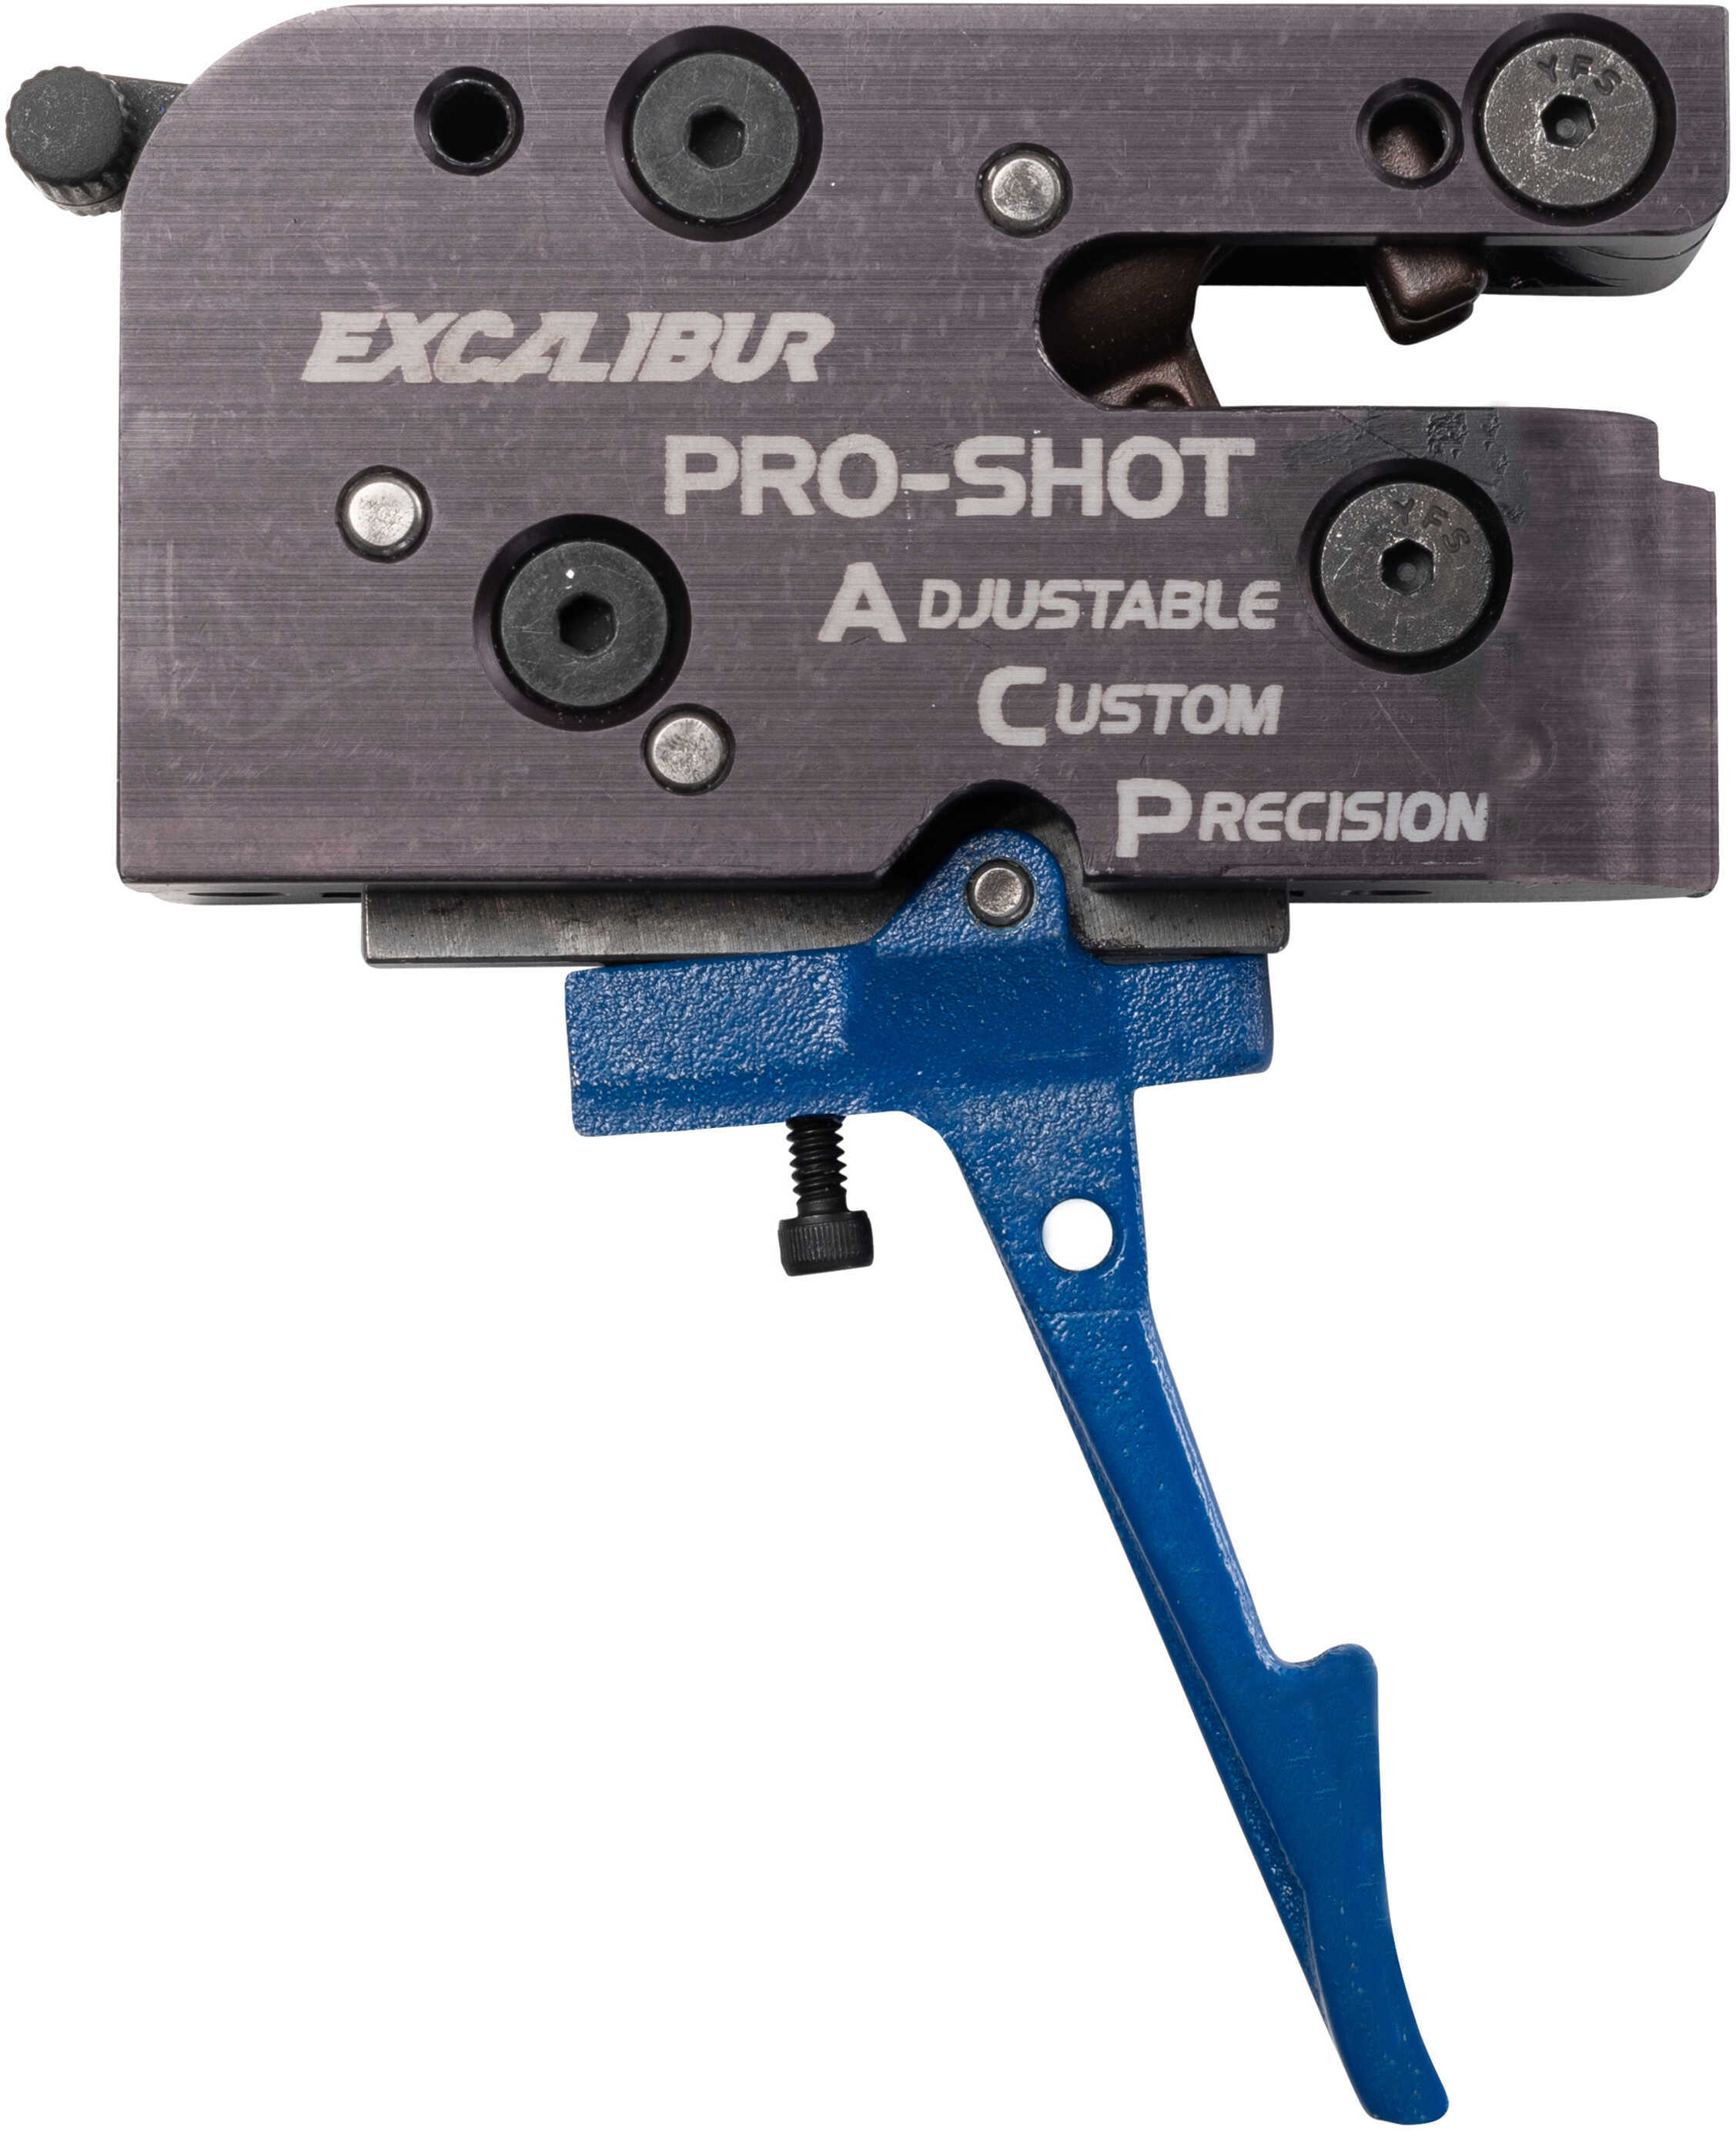 Excalibur Pro-shot ACP Trigger - fits most Bull Pup models